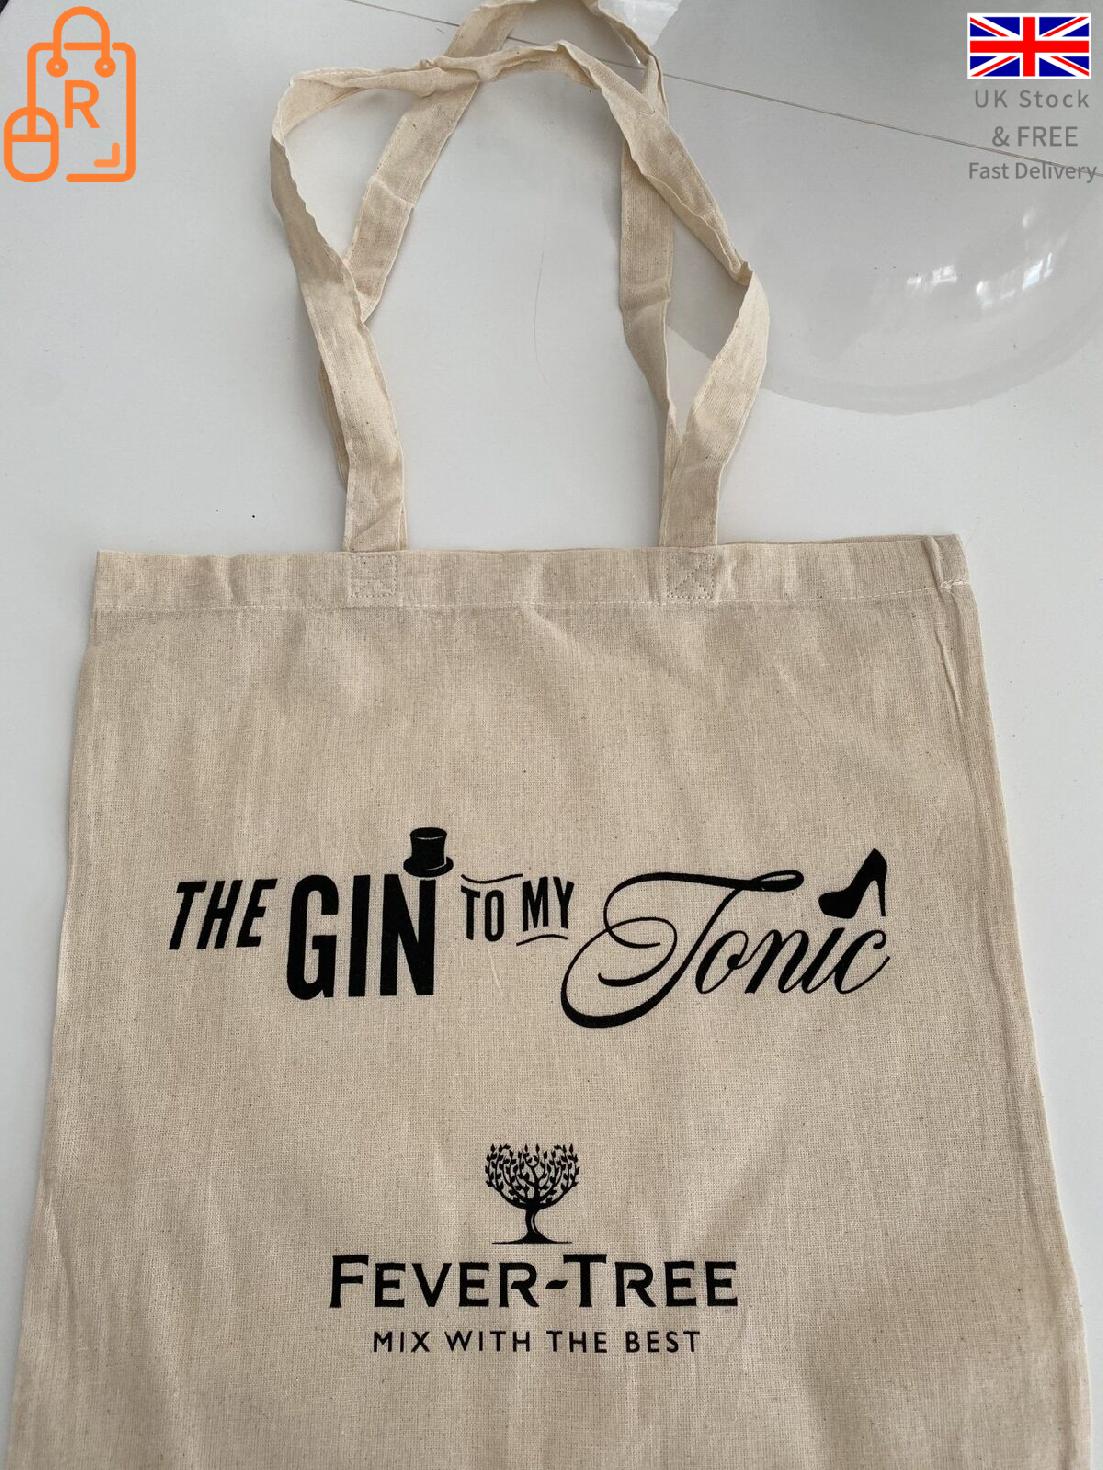 Reusable The Gin To My Tonic Tote Bag - Handbag Friendly, Strong Like your Gin! - RLO Tech